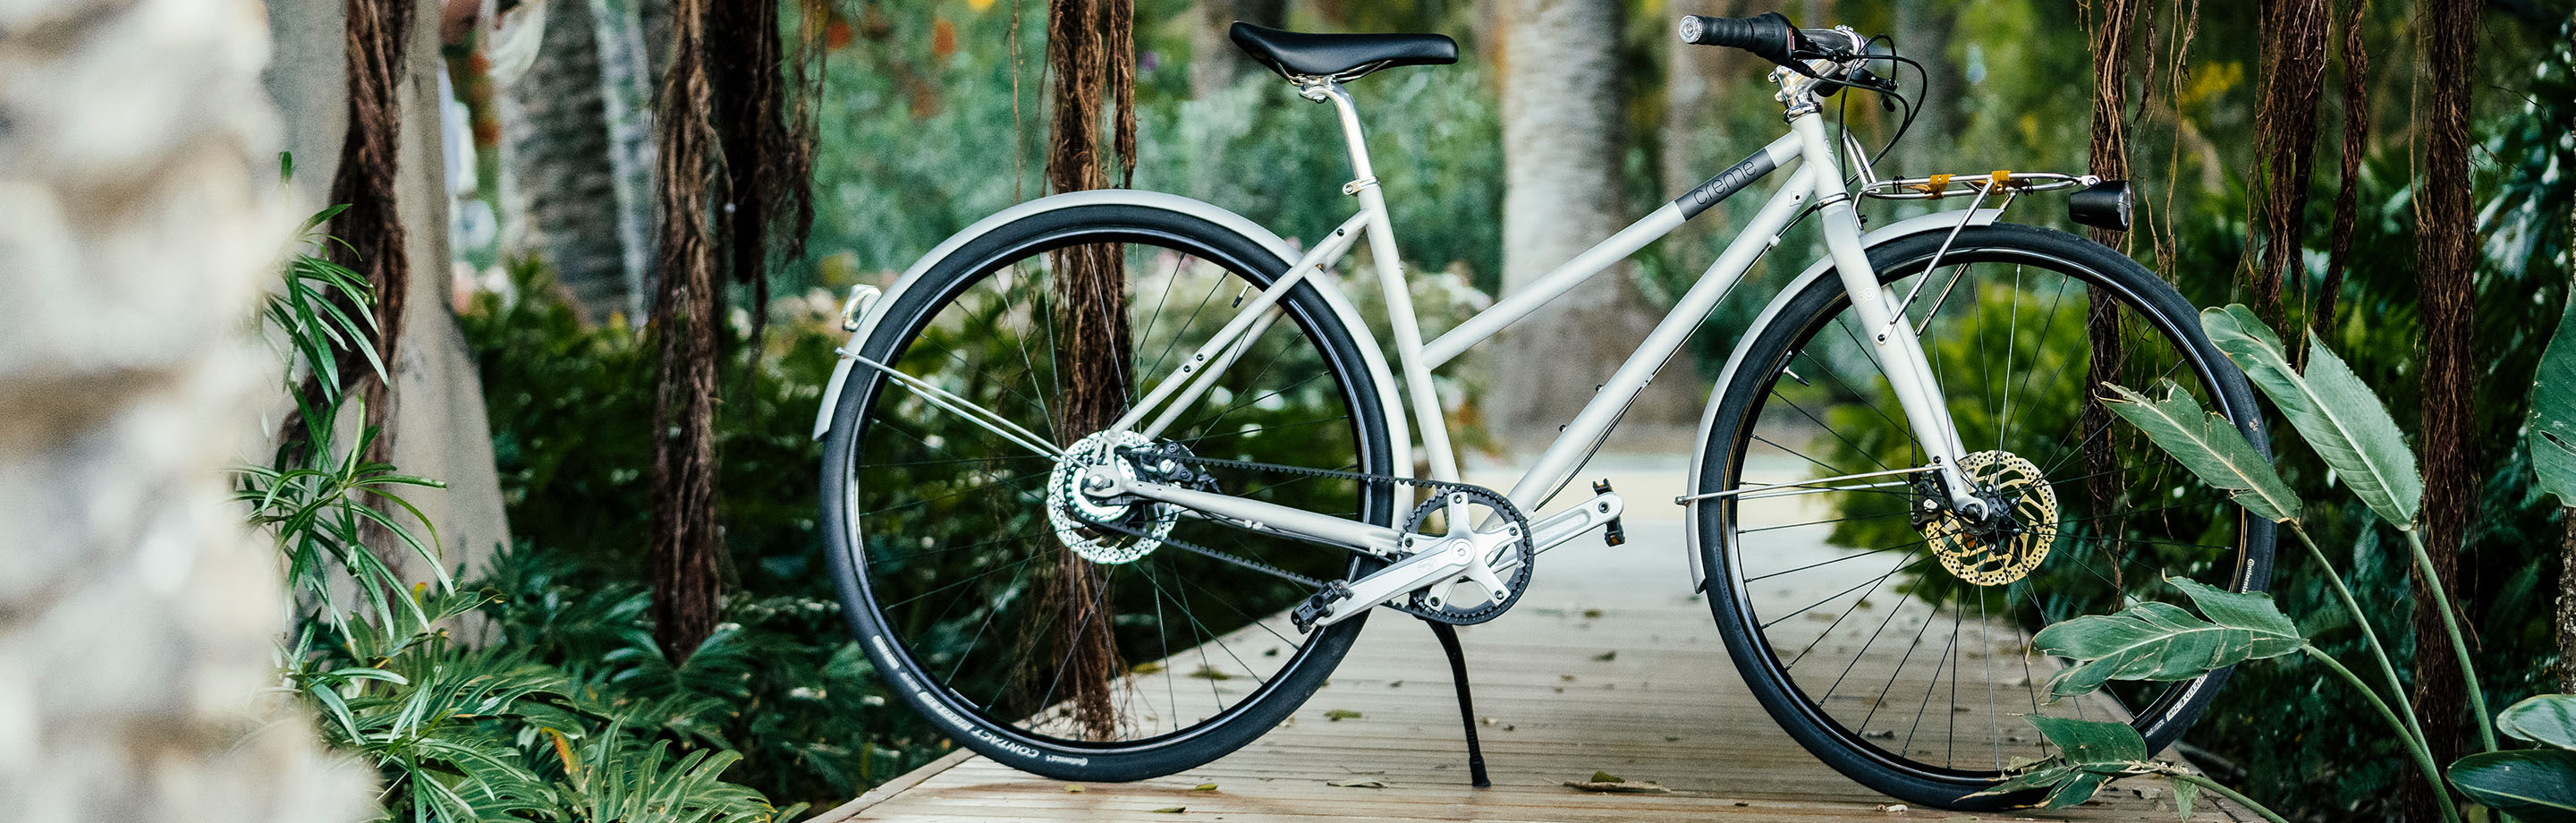 Creme Cycles - veelzijdige vintage fietsen voor jouw lifestyle